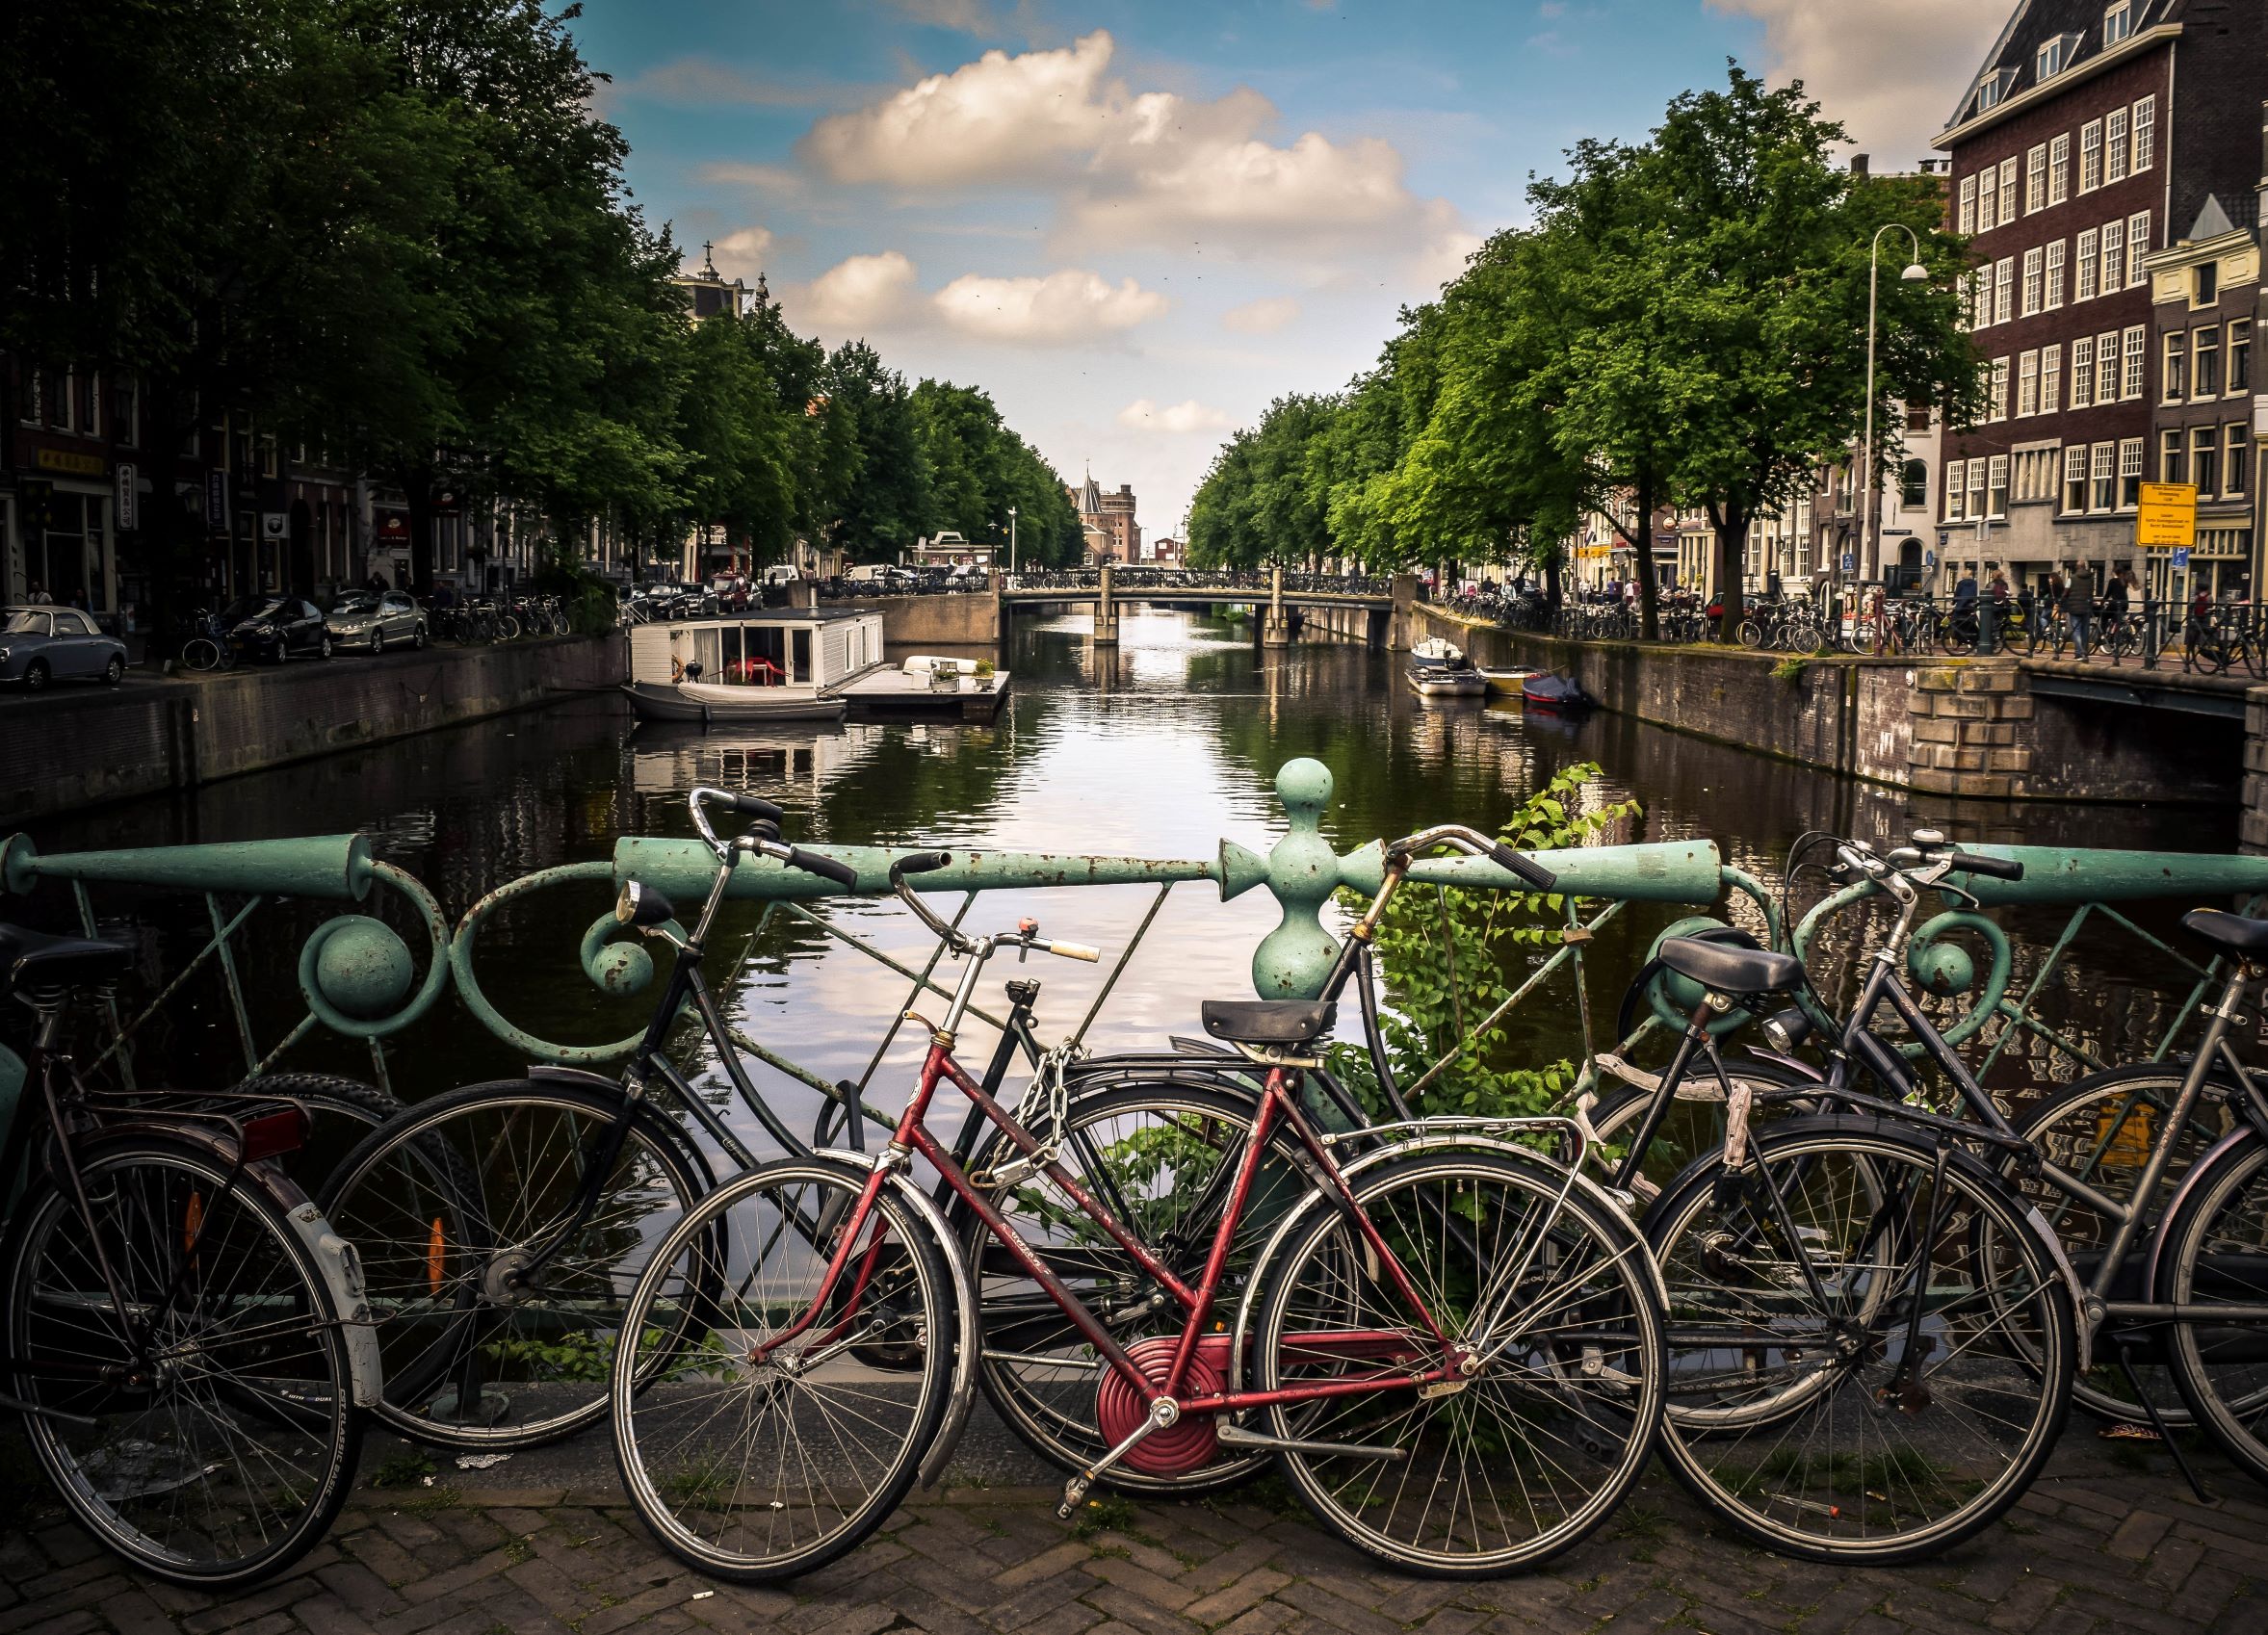  Xe đạp là phương tiện khá phổ biến tại Châu Âu và tại Bỉ cũng không là ngoại lệ